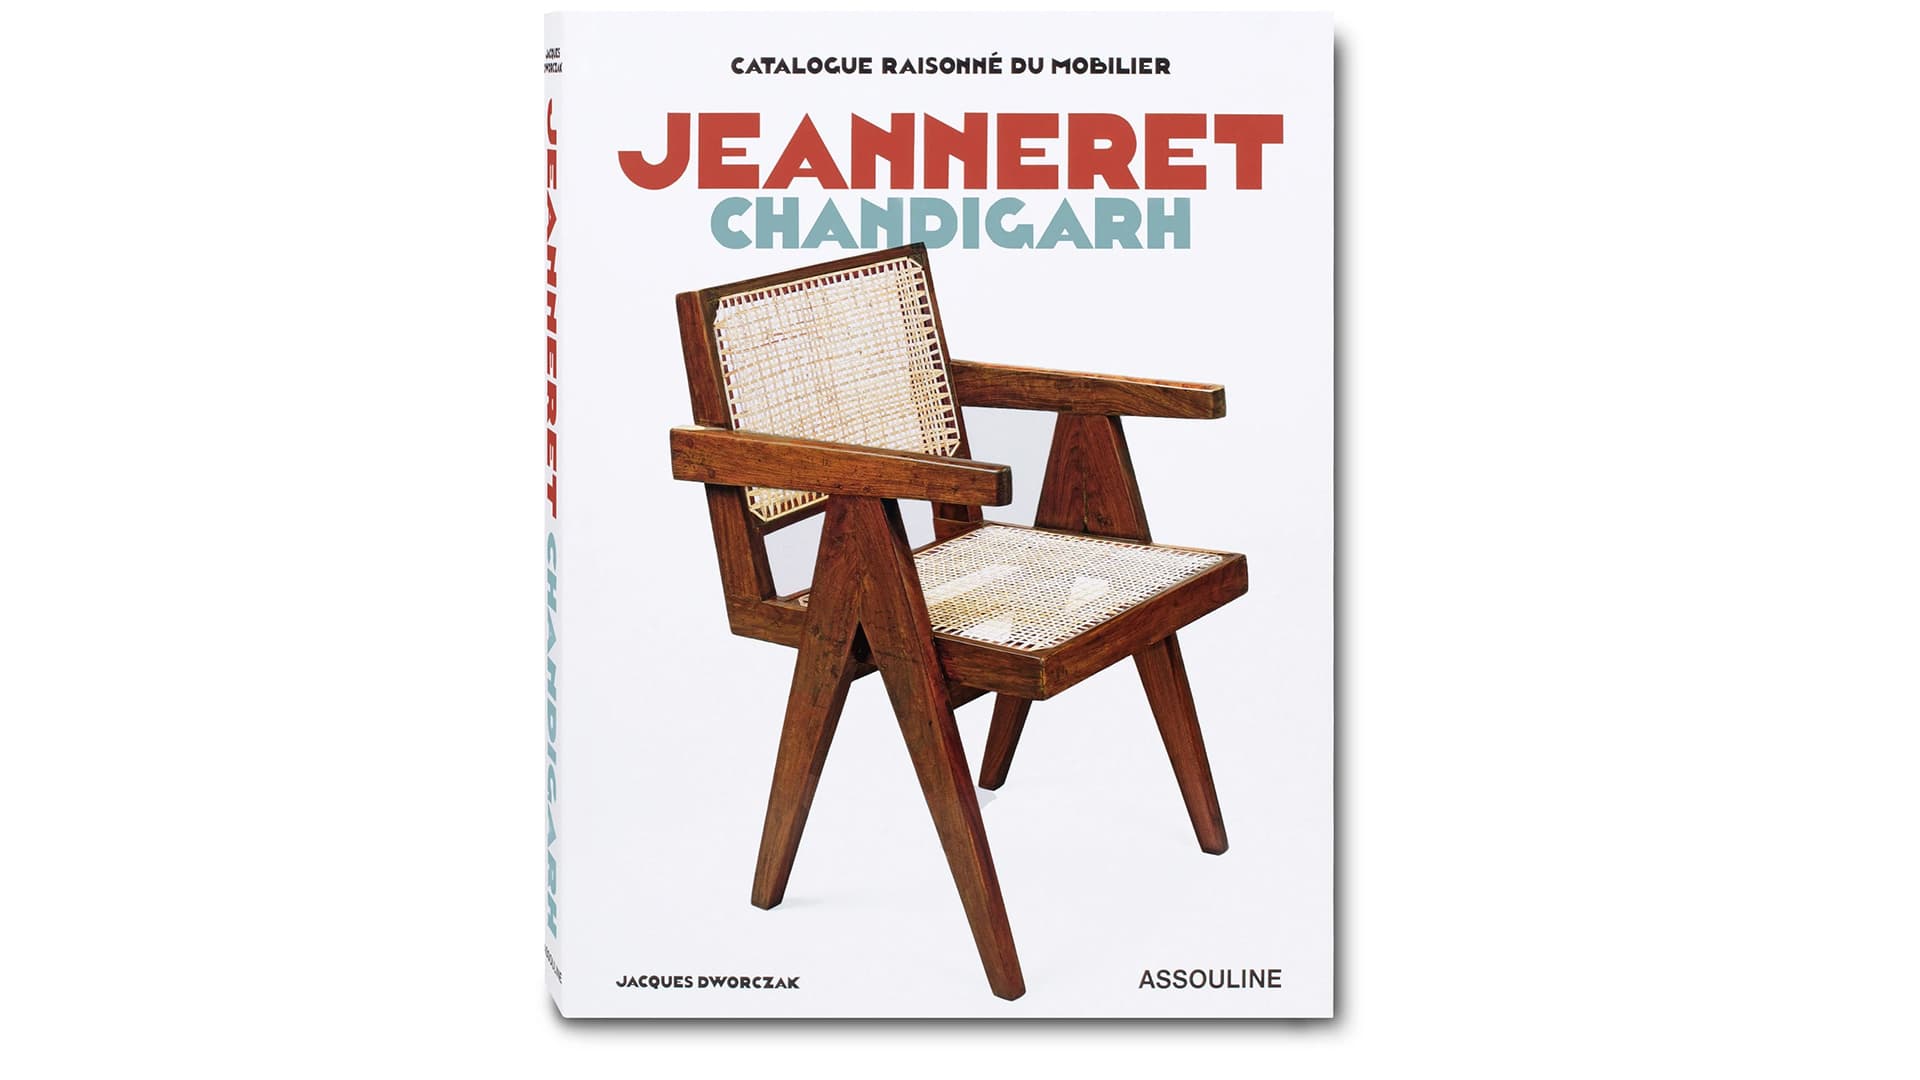 Jeanneret Chandigarh: Catalogue Raisonné du Mobilier